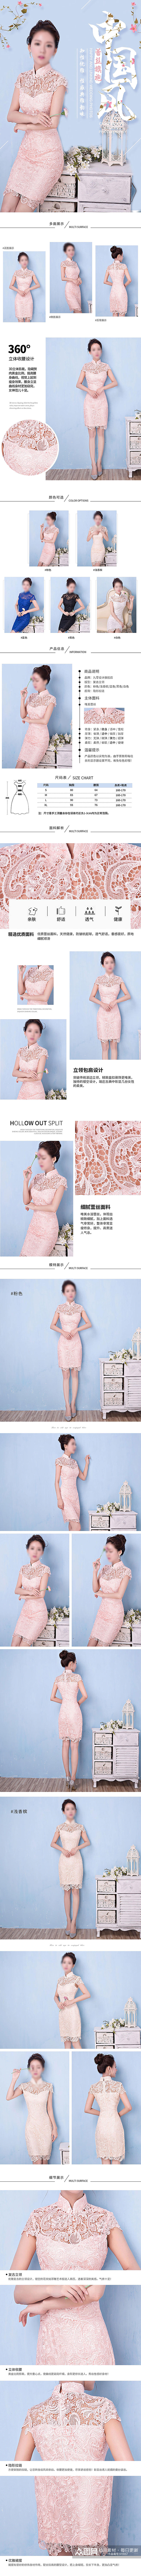 中国风淡红色婚纱礼服详情页素材